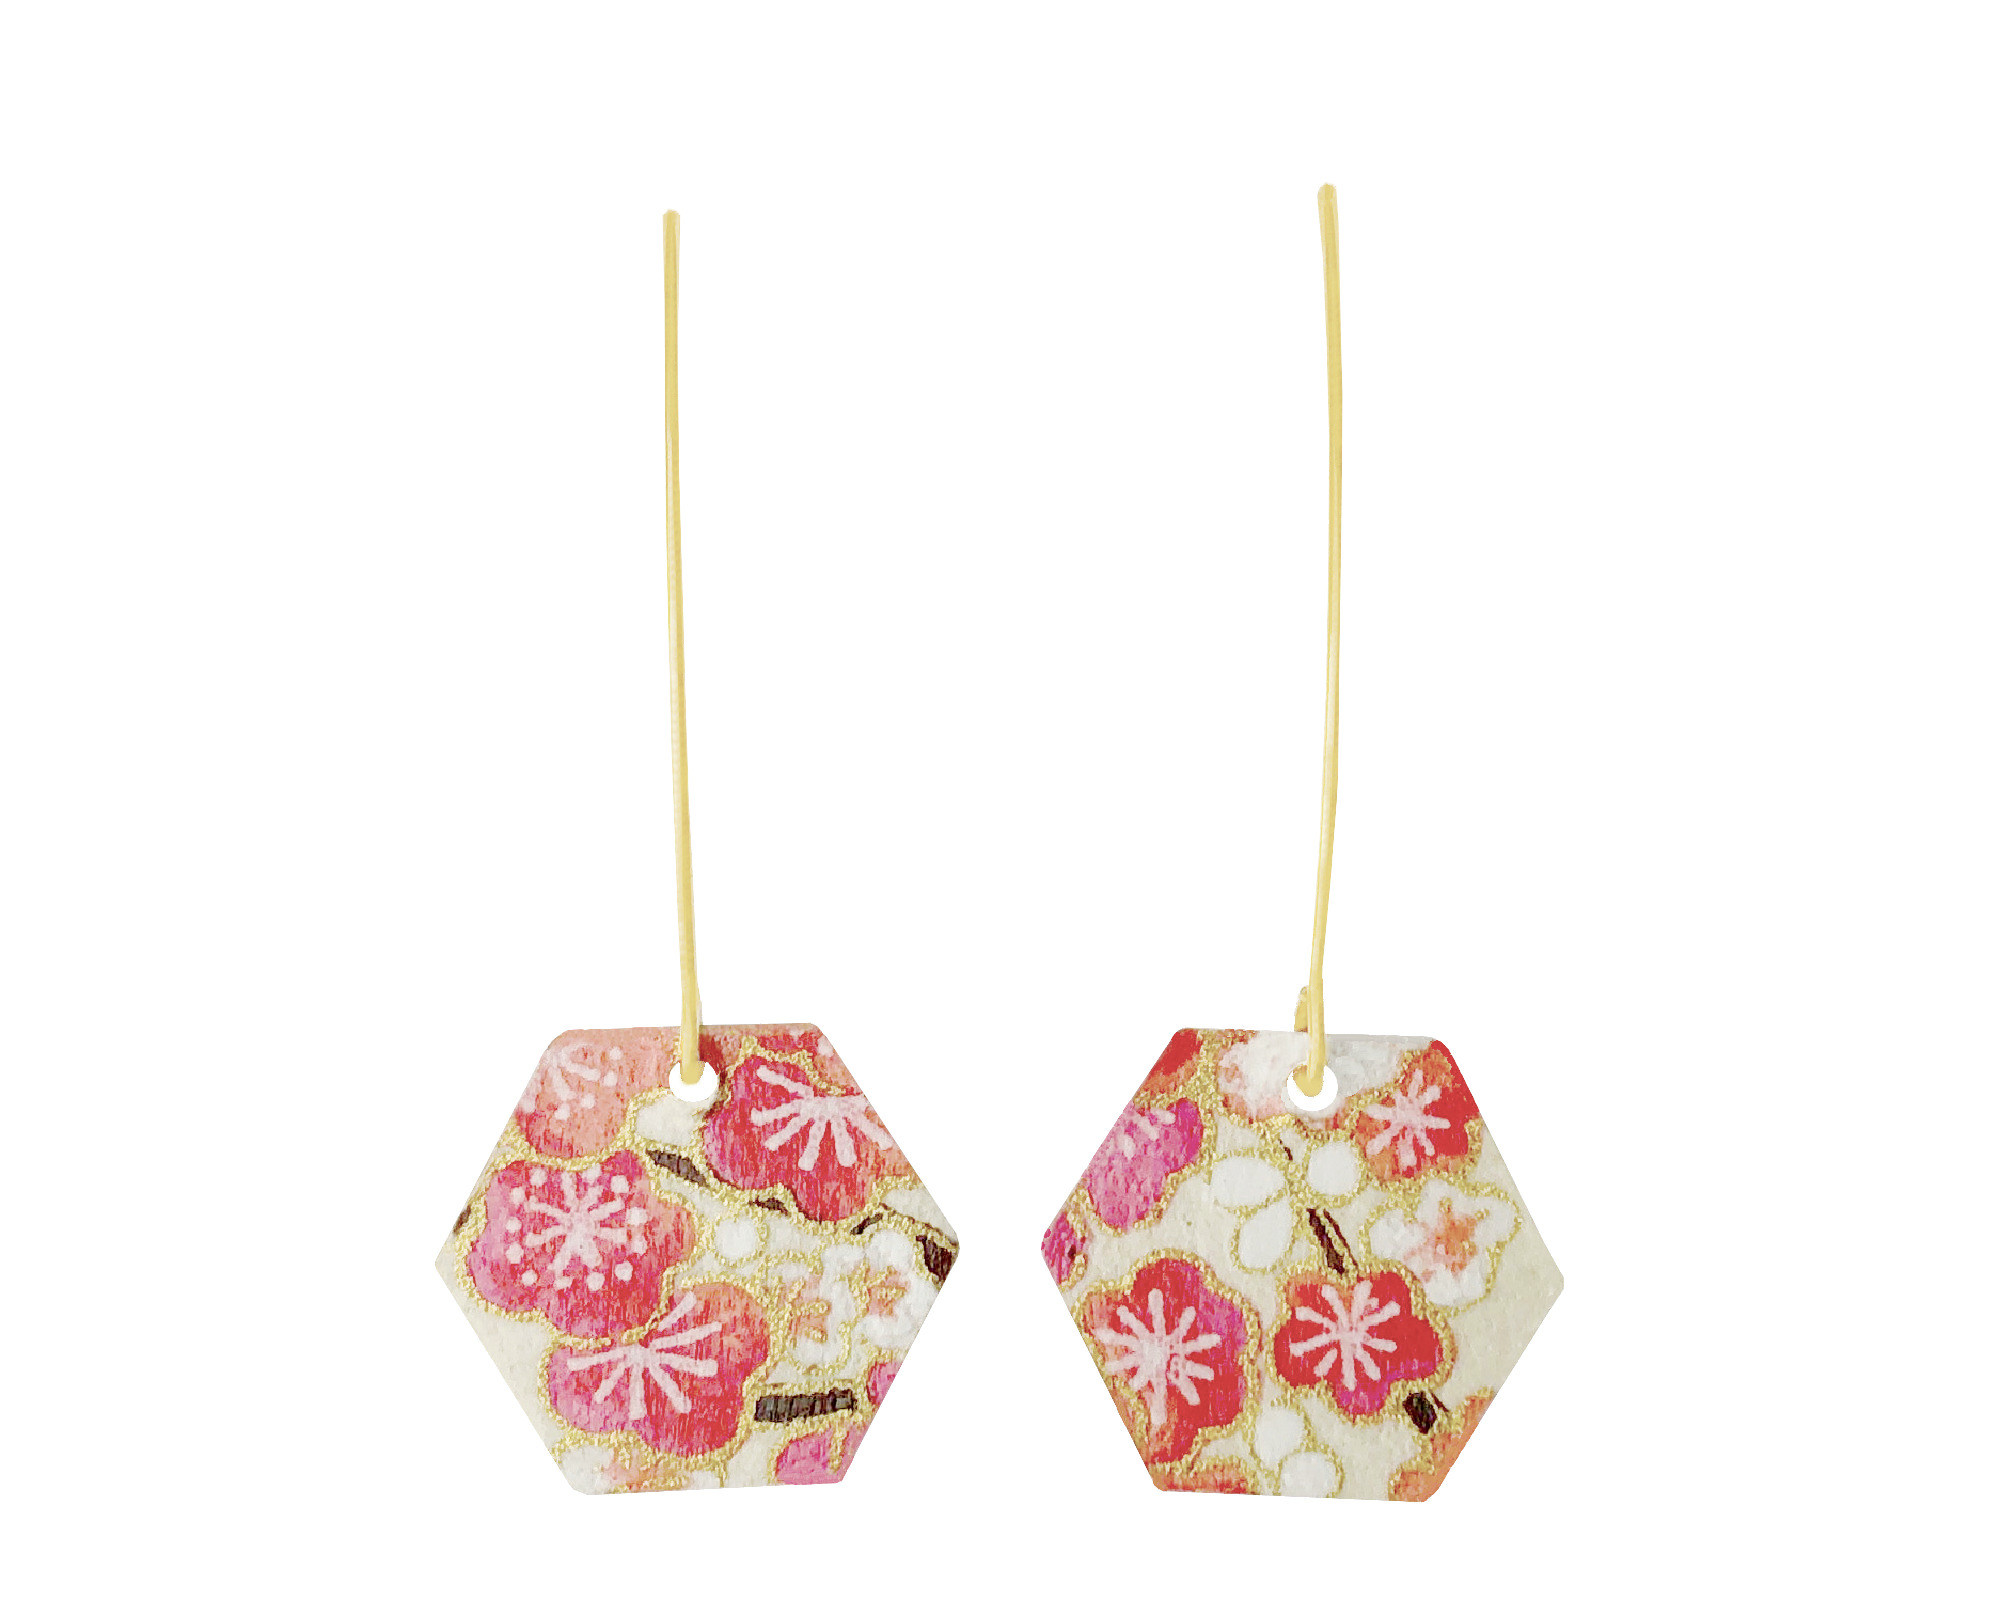 Boucles doreilles FUMI acier inoxydable doré or longues pendentif papier washi japonais fleurs couleur rose beige minimaliste